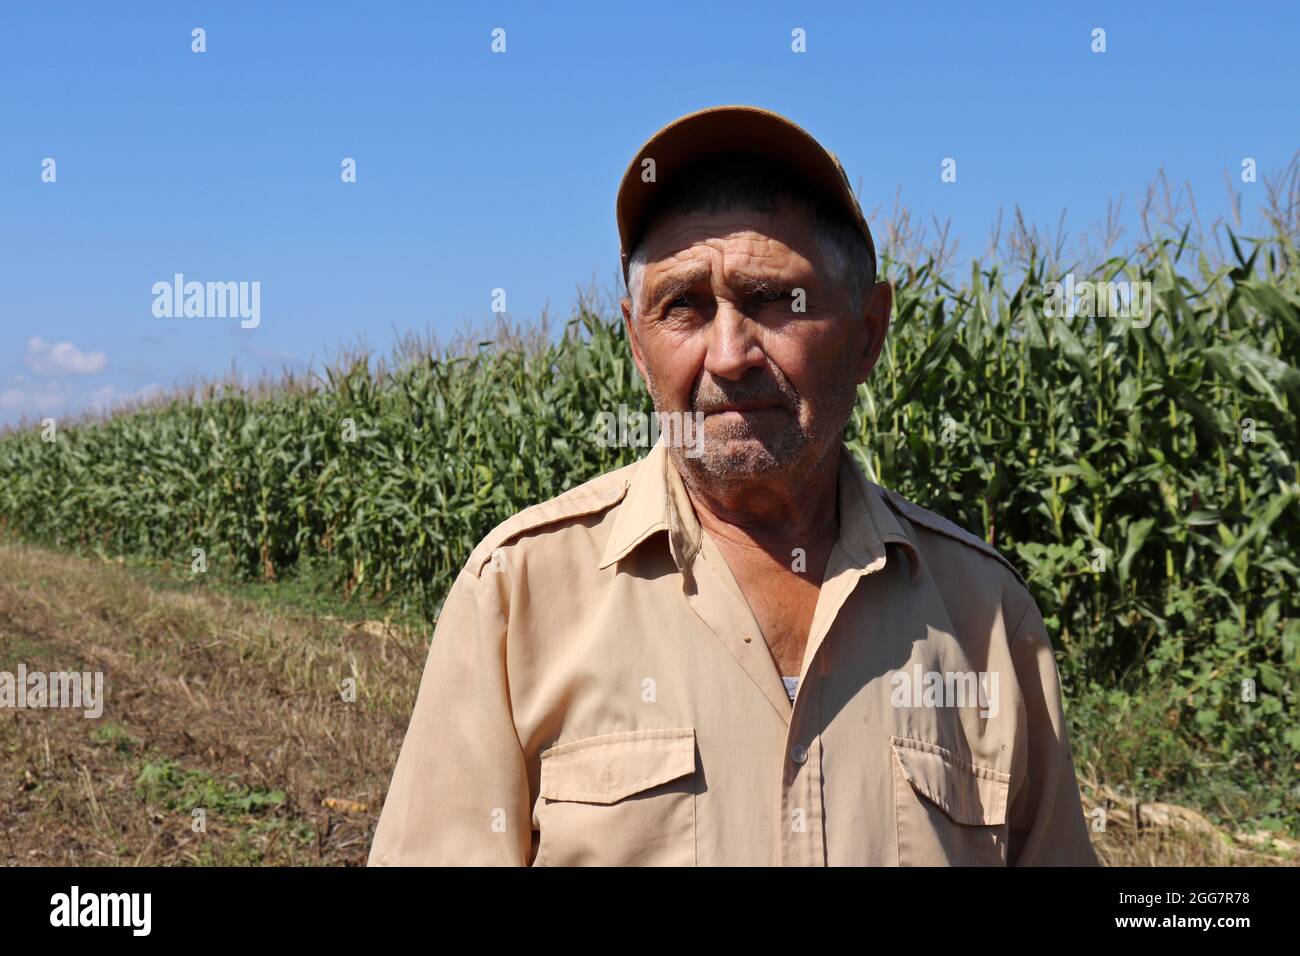 Der alte Bauer steht auf einem grünen Maisfeld, ein älterer Mann mit Baseballmütze inspiziert die Ernte. Farm in einem sonnigen Tag, hohe Maisstängel, gute Ernte Stockfoto